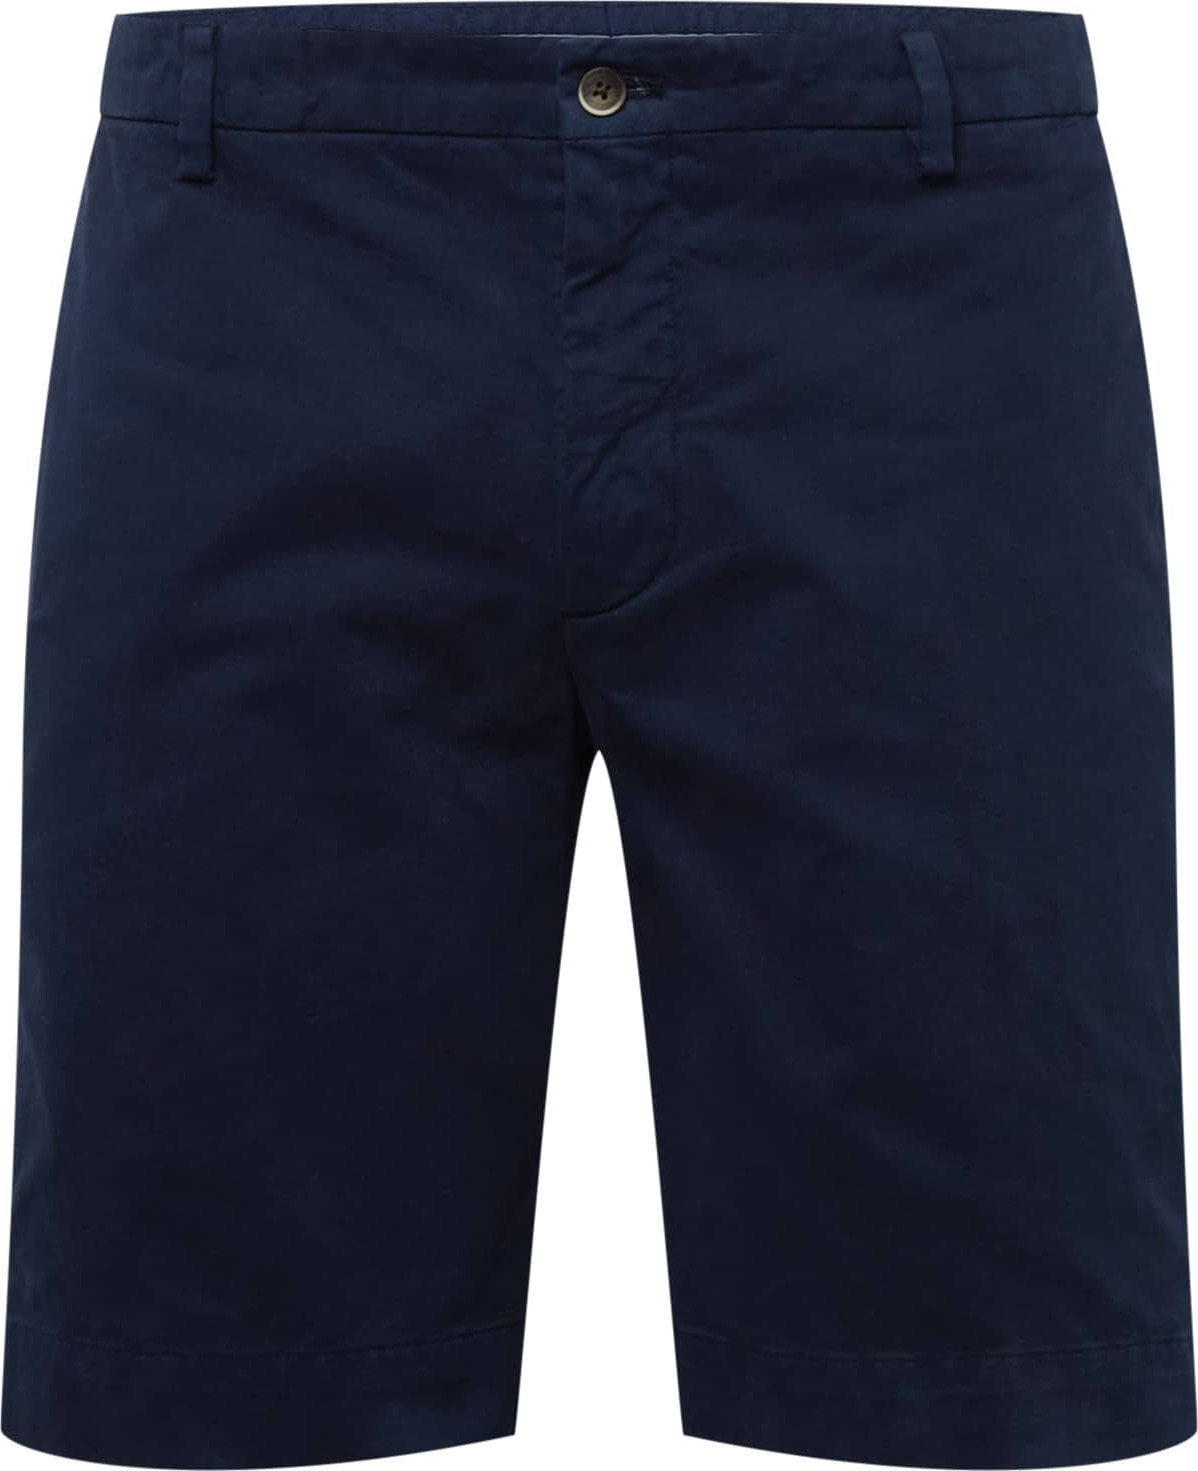 Chino kalhoty 'KENSINGTON' Hackett London námořnická modř